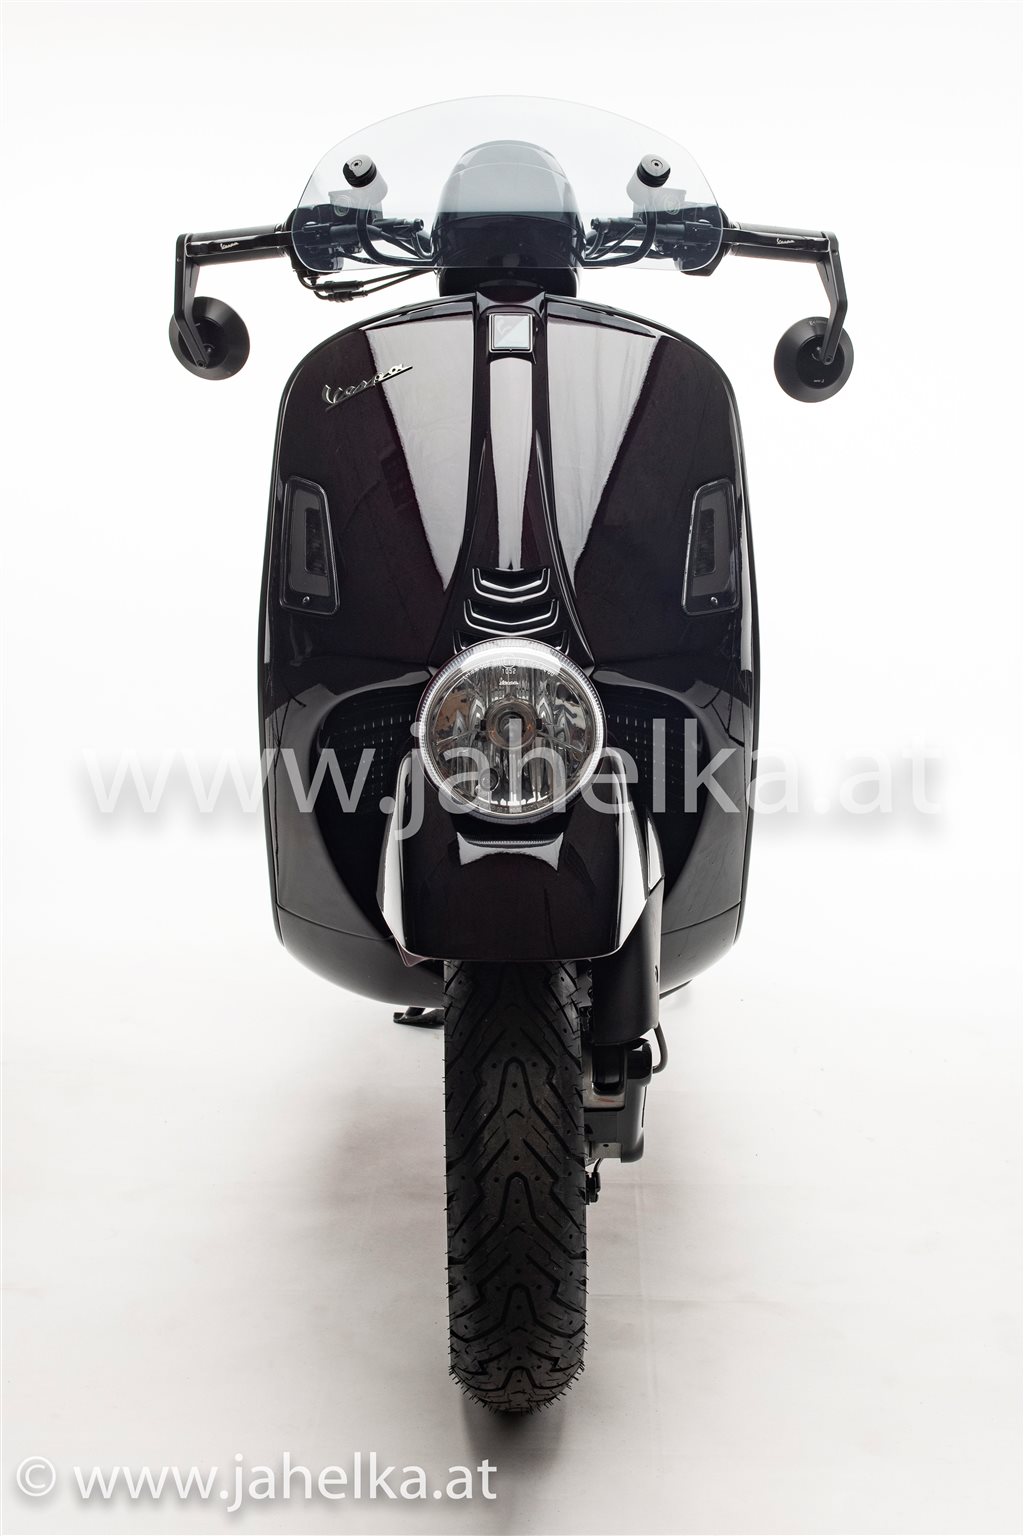 Details zum Custom-Bike Vespa GTV Sei Giorni 300hpe des Händlers